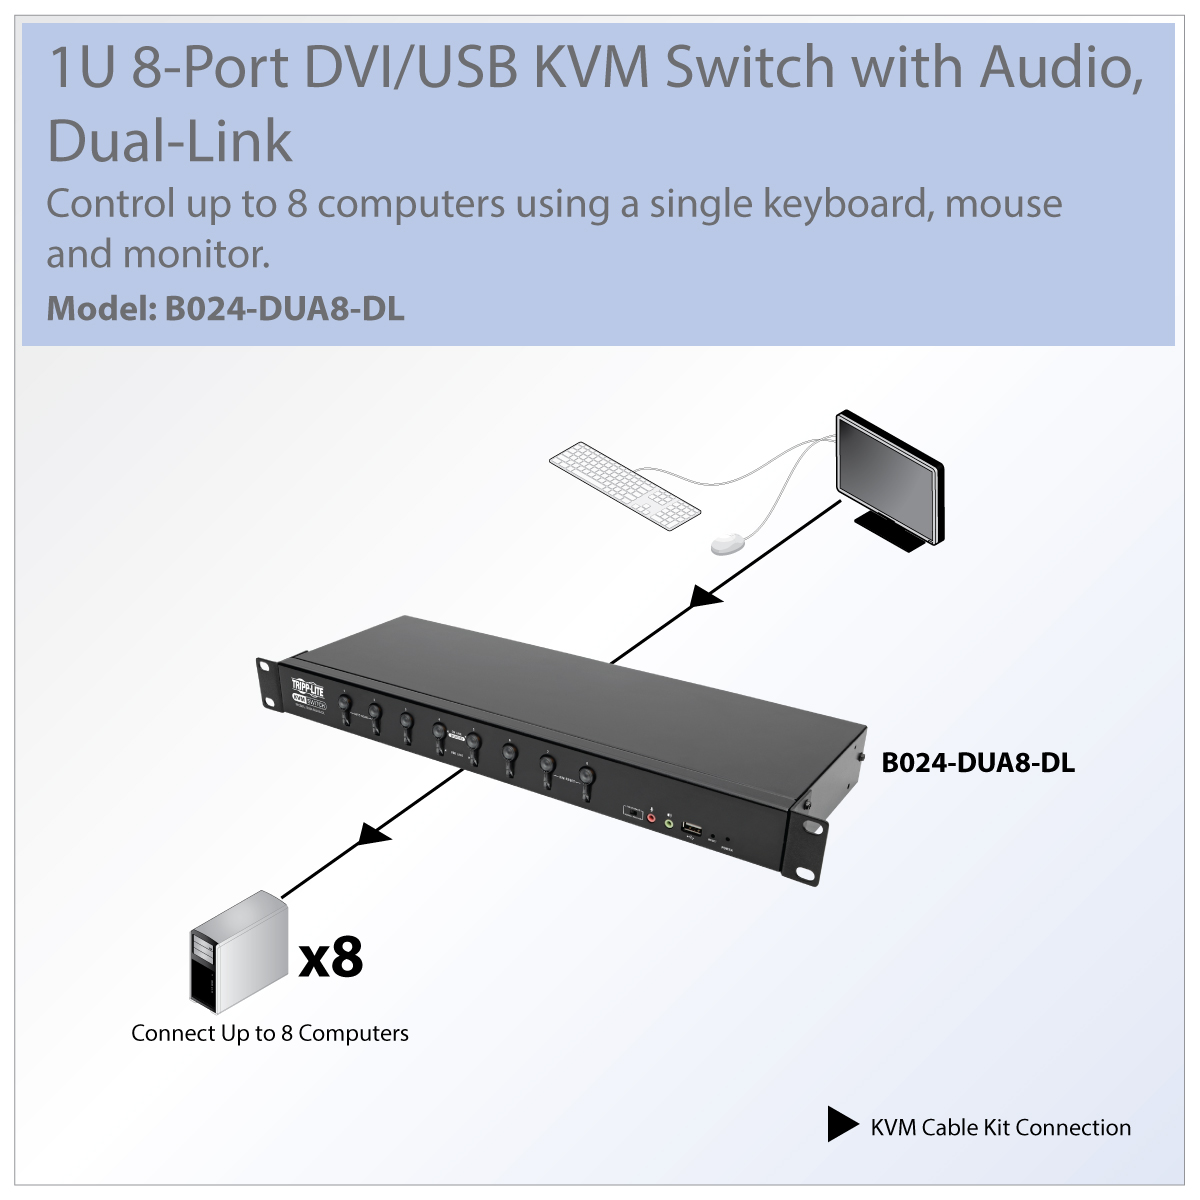 Tripp Lite 8-Port DVI/USB KVM Switch with Audio and USB 2.0